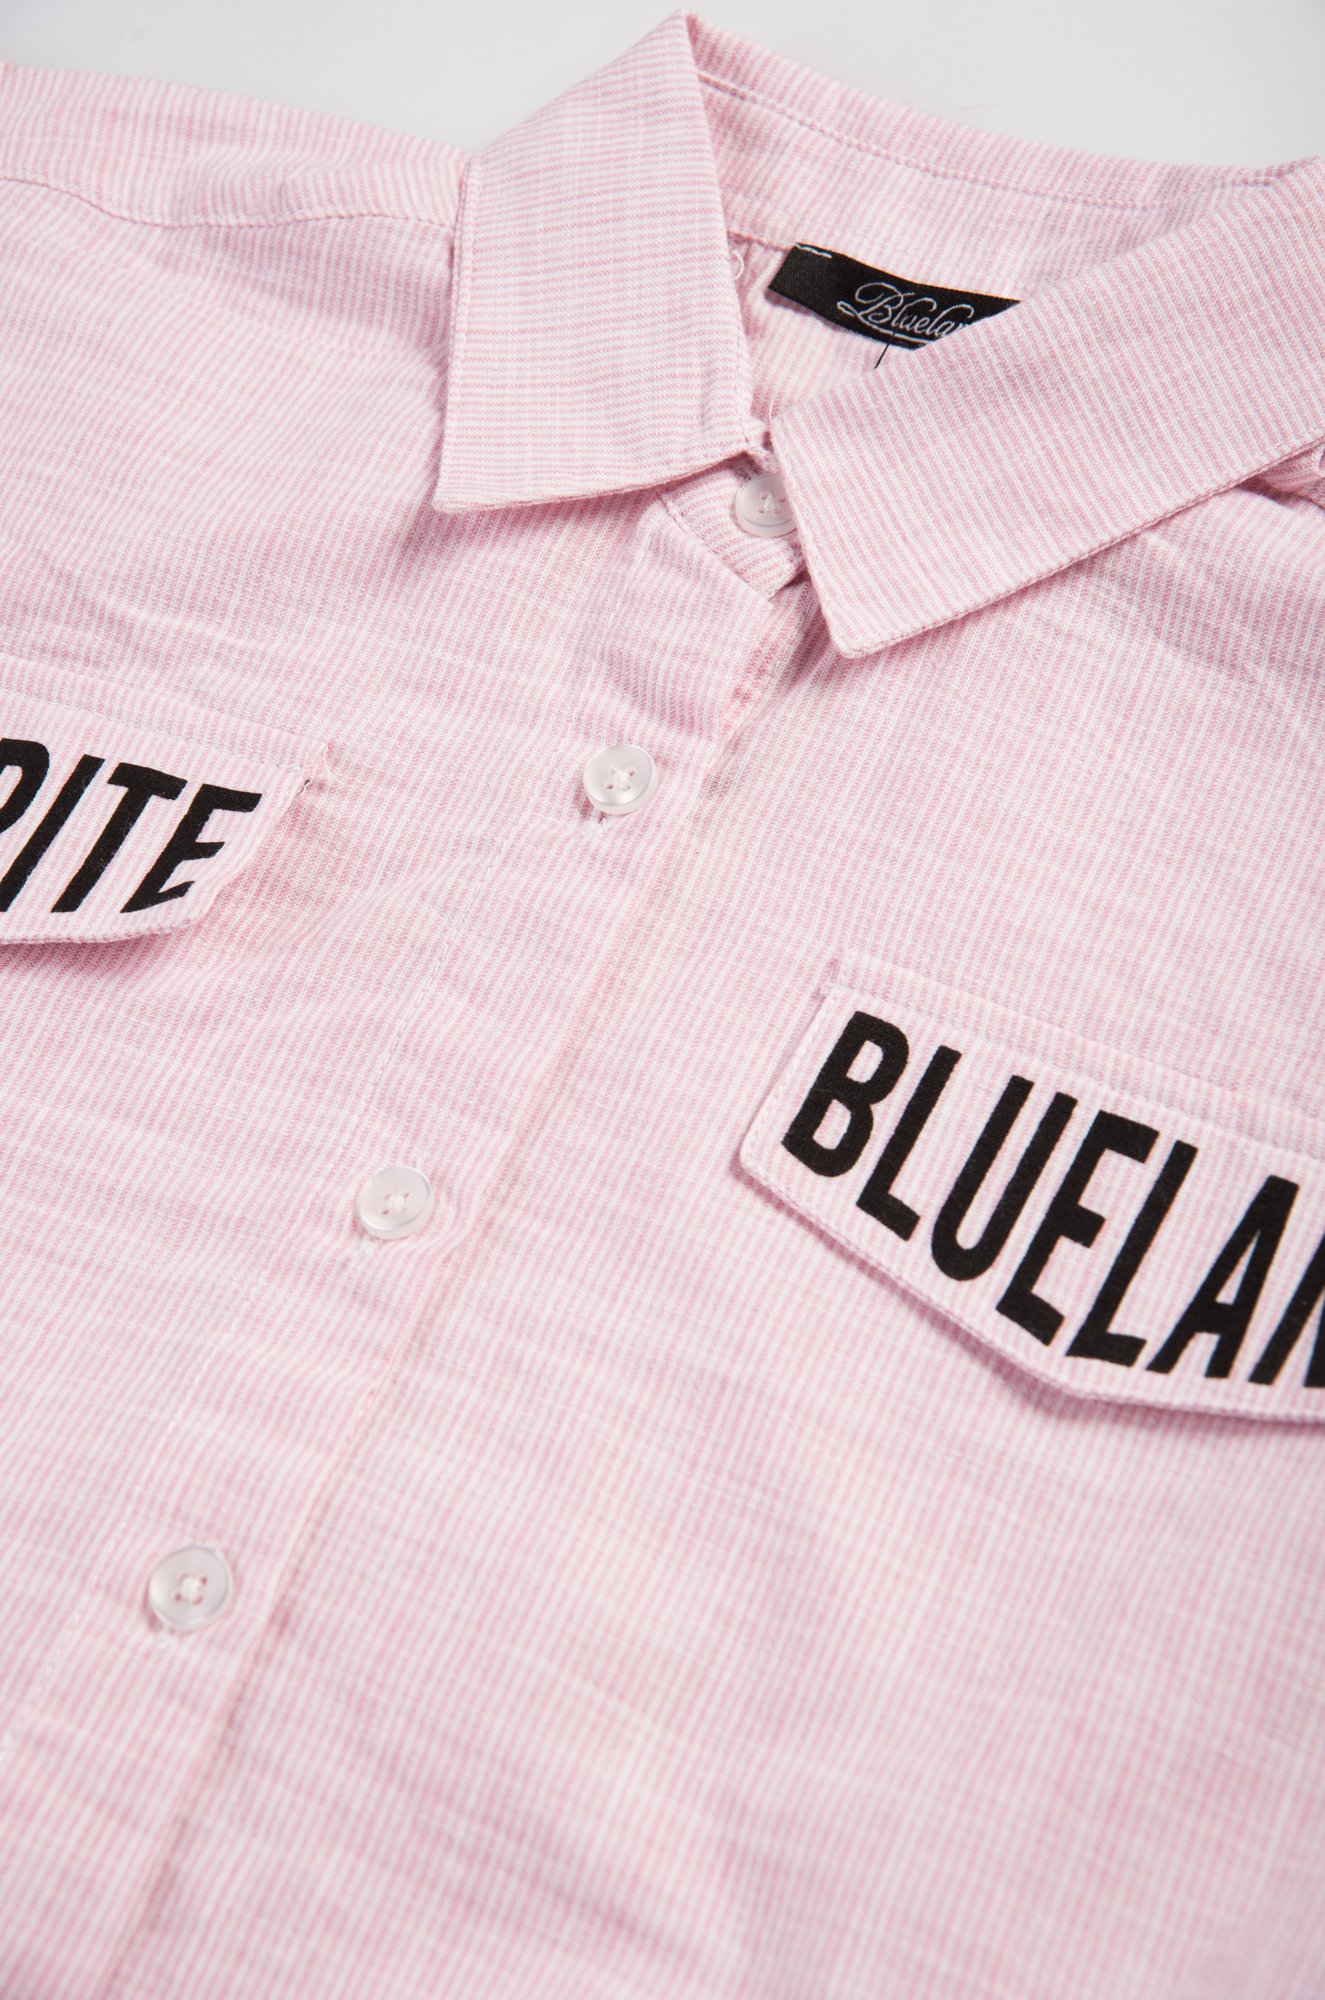 Блузка для девочки Blueland